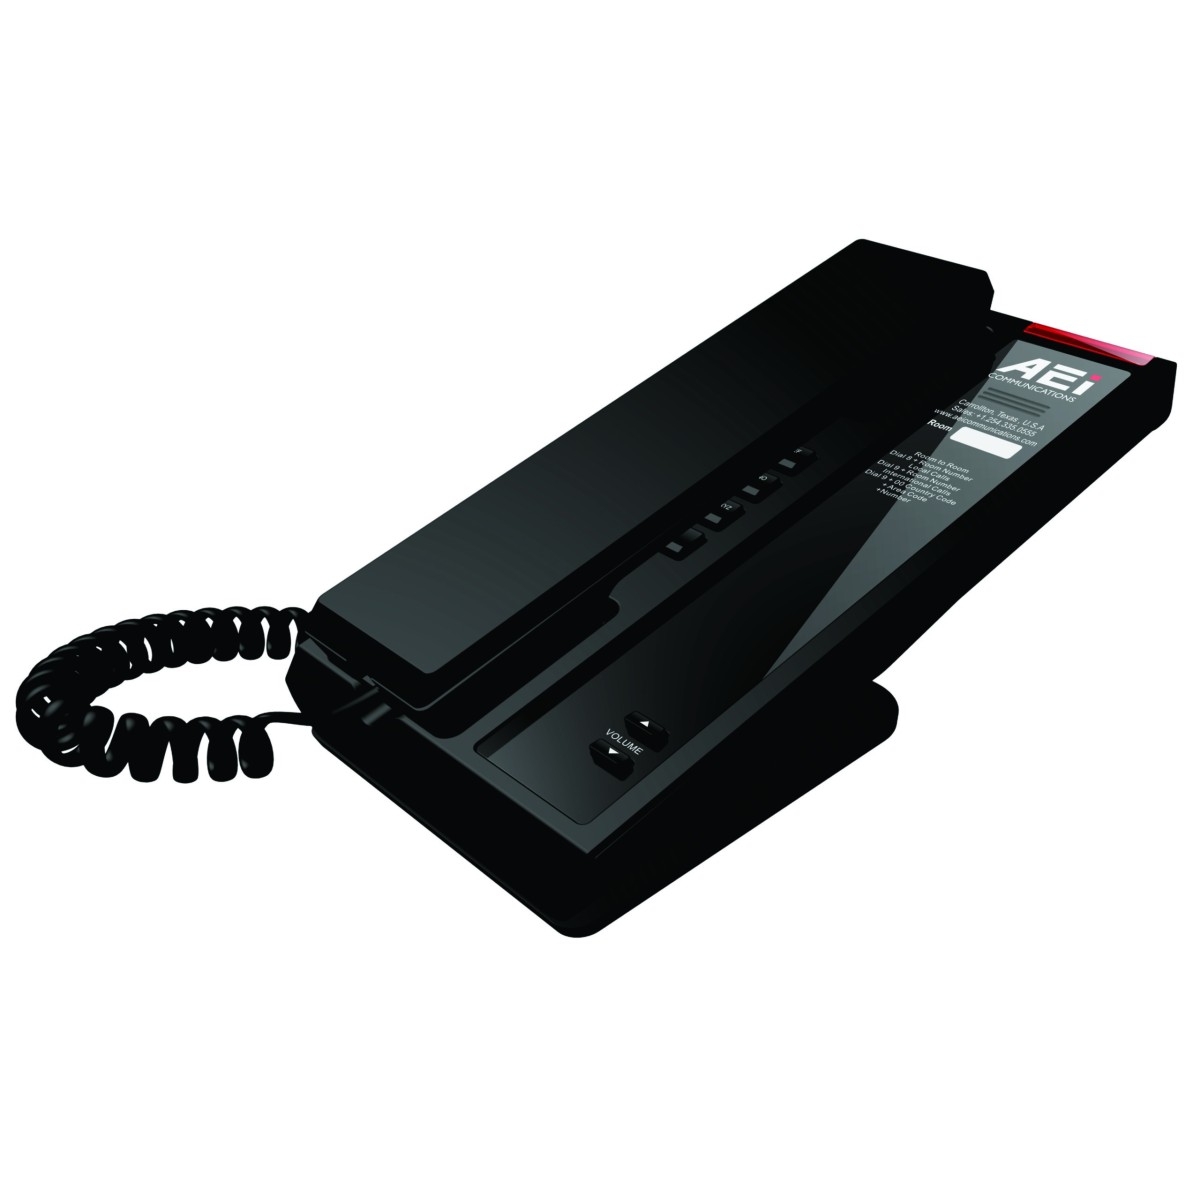 AEI SLN-1100 Slim Single-Line IP Corded Telephone